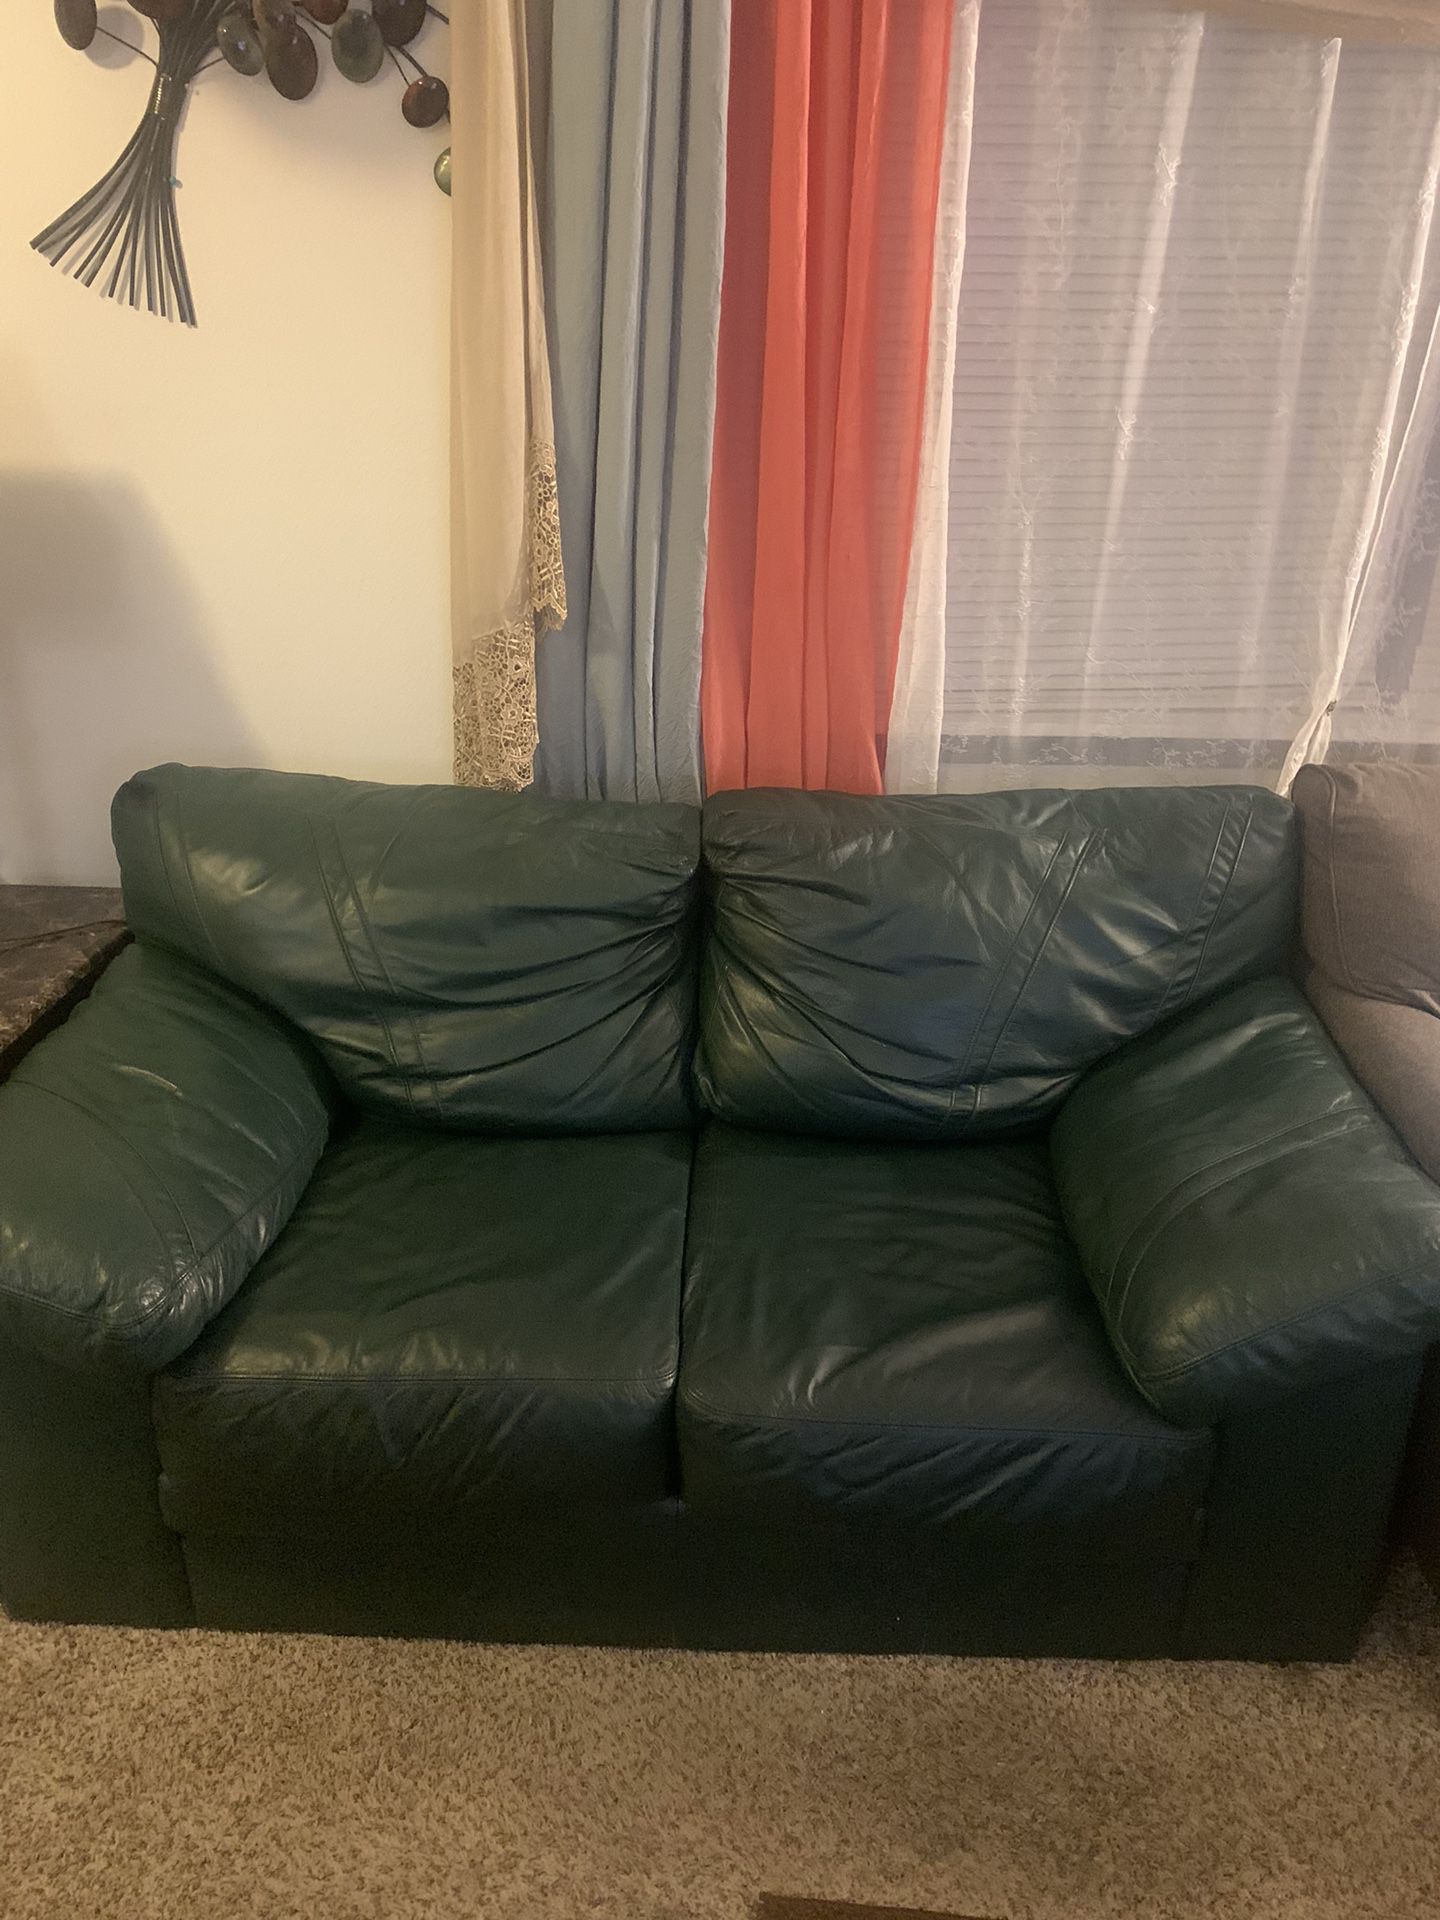 Sofa& Chair